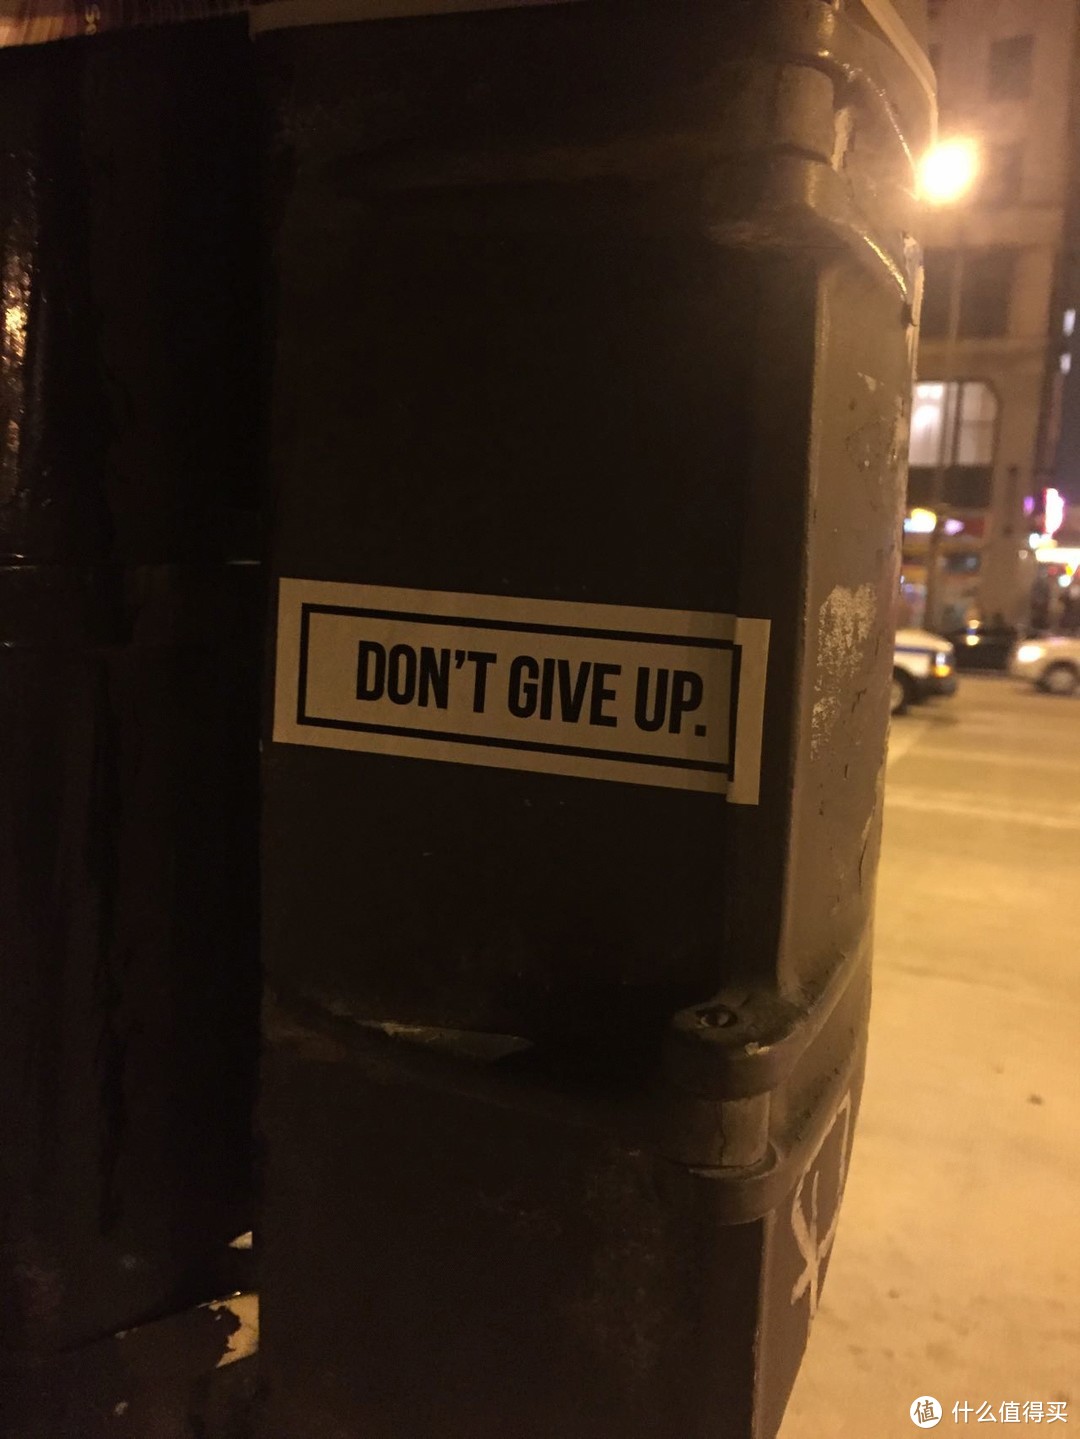 千禧公园旁贴在墙上的“Don't give up"